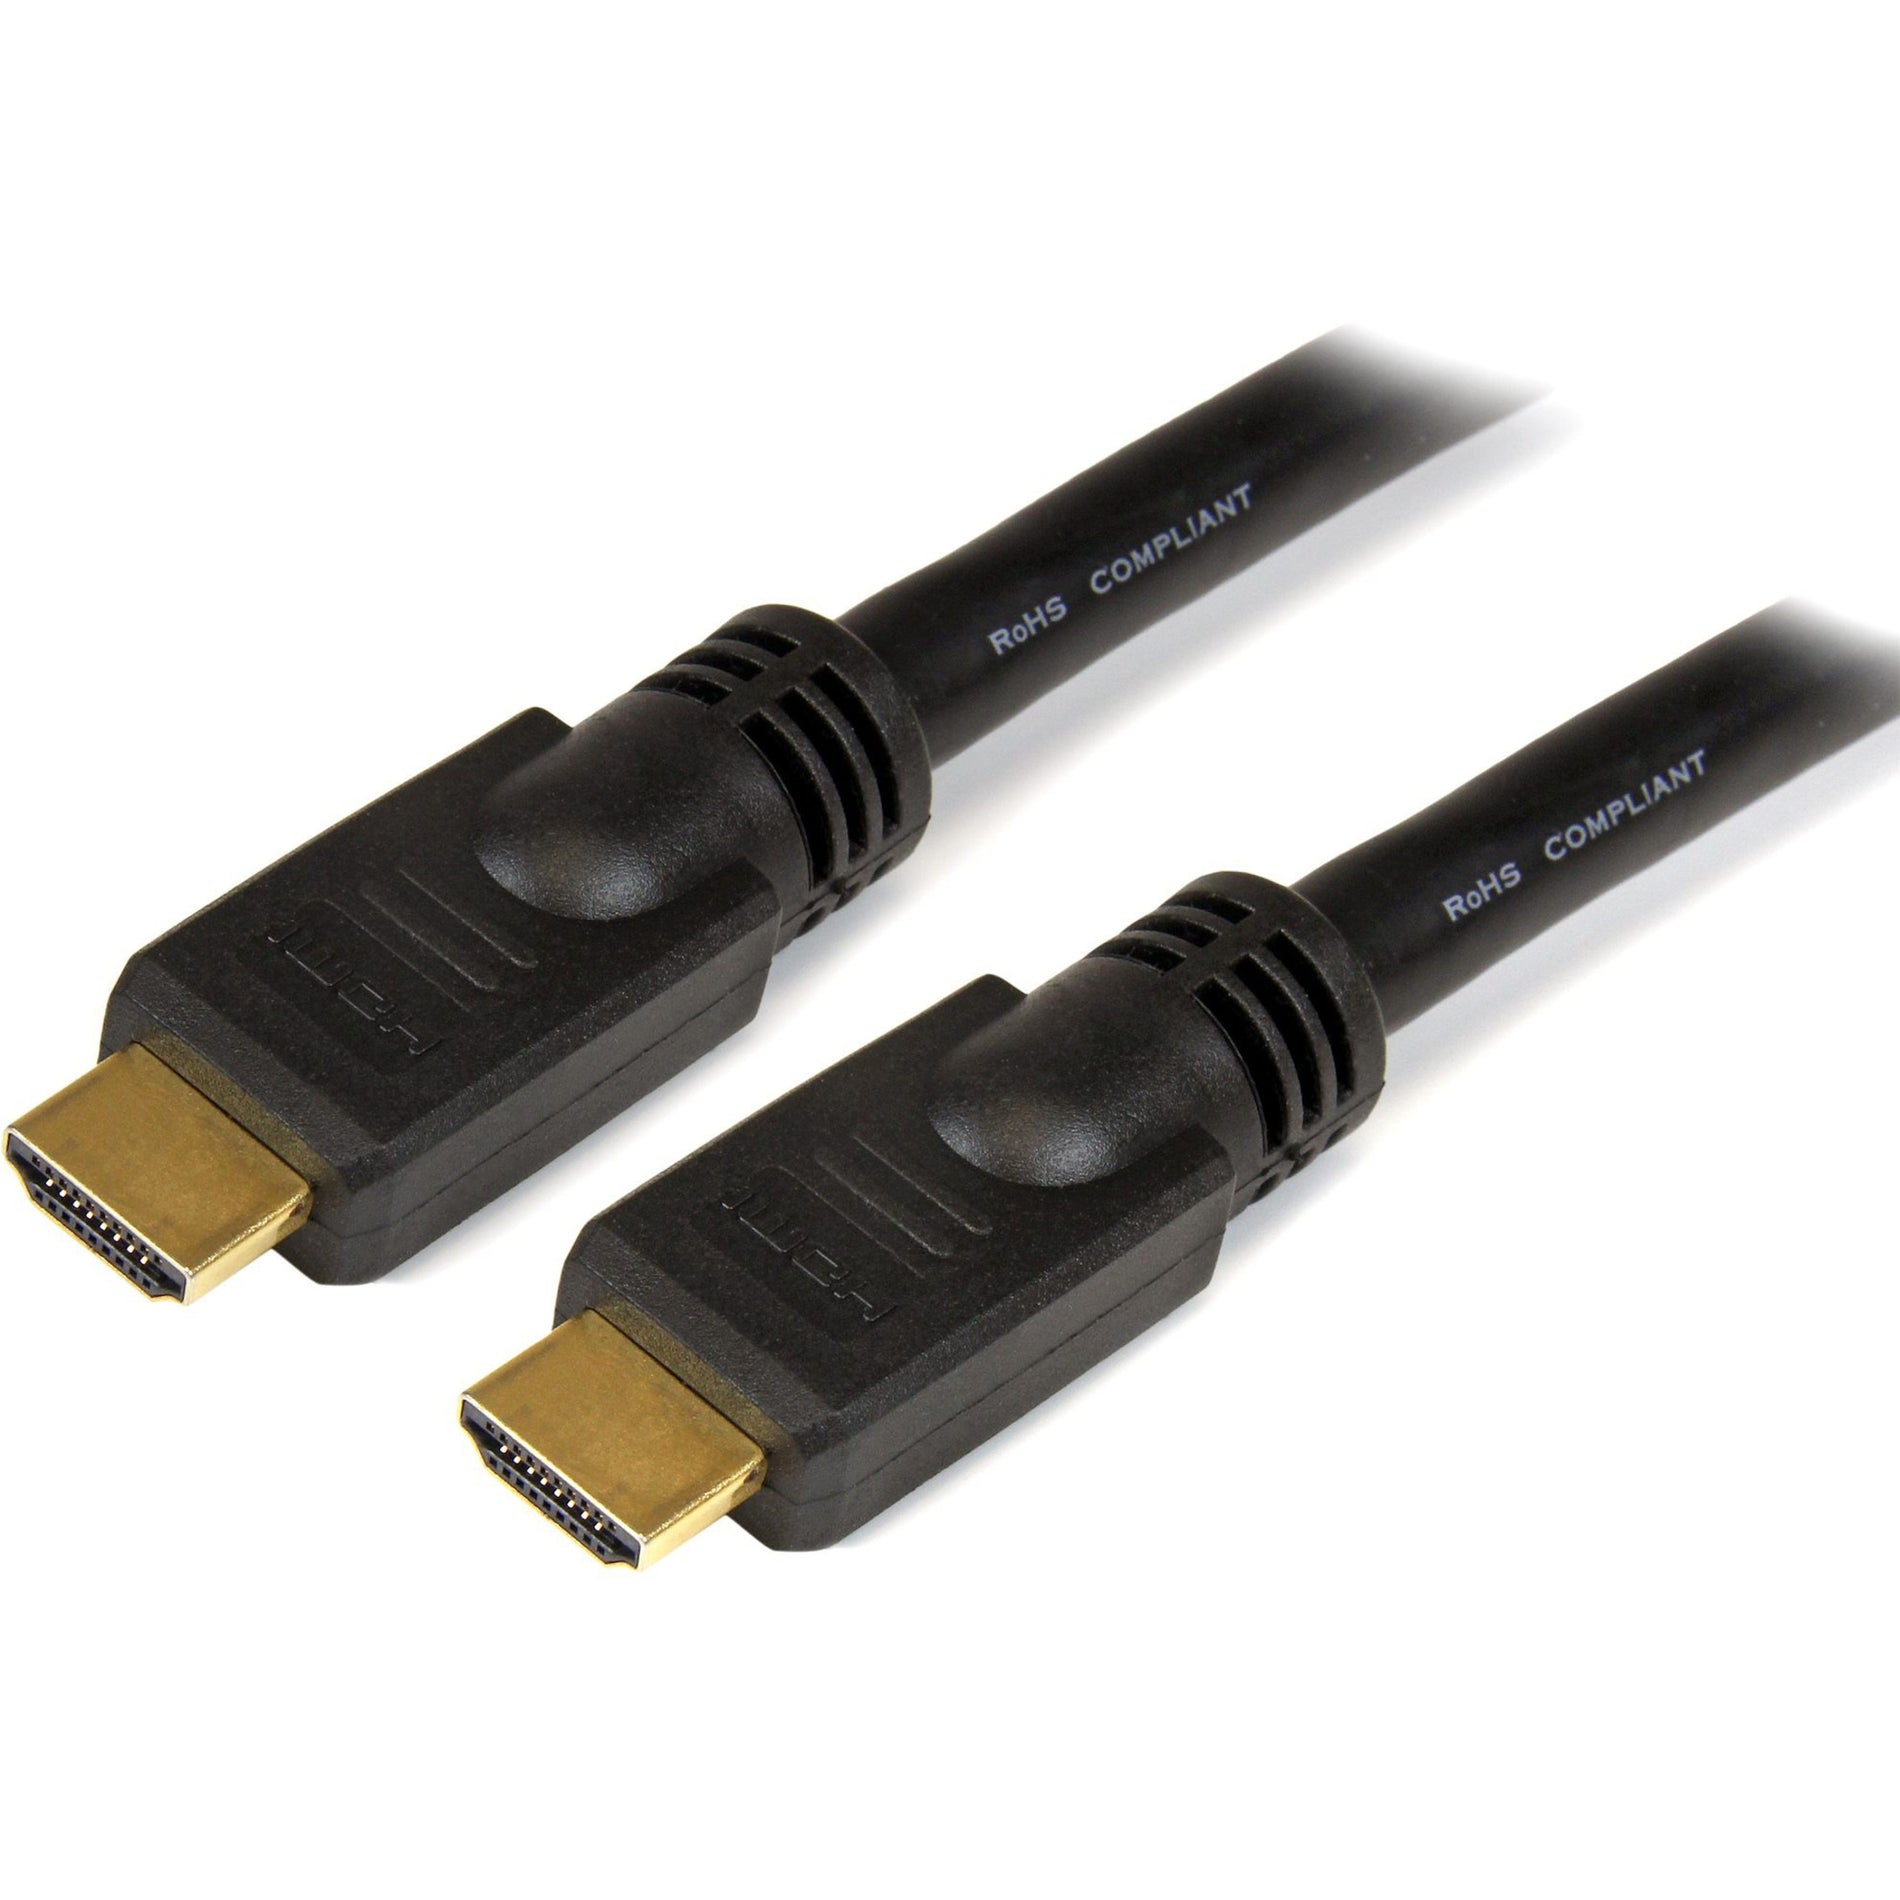 Marca: StarTech.com  Cable HDMI de alta velocidad de 20 pies - Cable HDMI Ultra HD 4k x 2k moldeado conectores chapados en oro negro